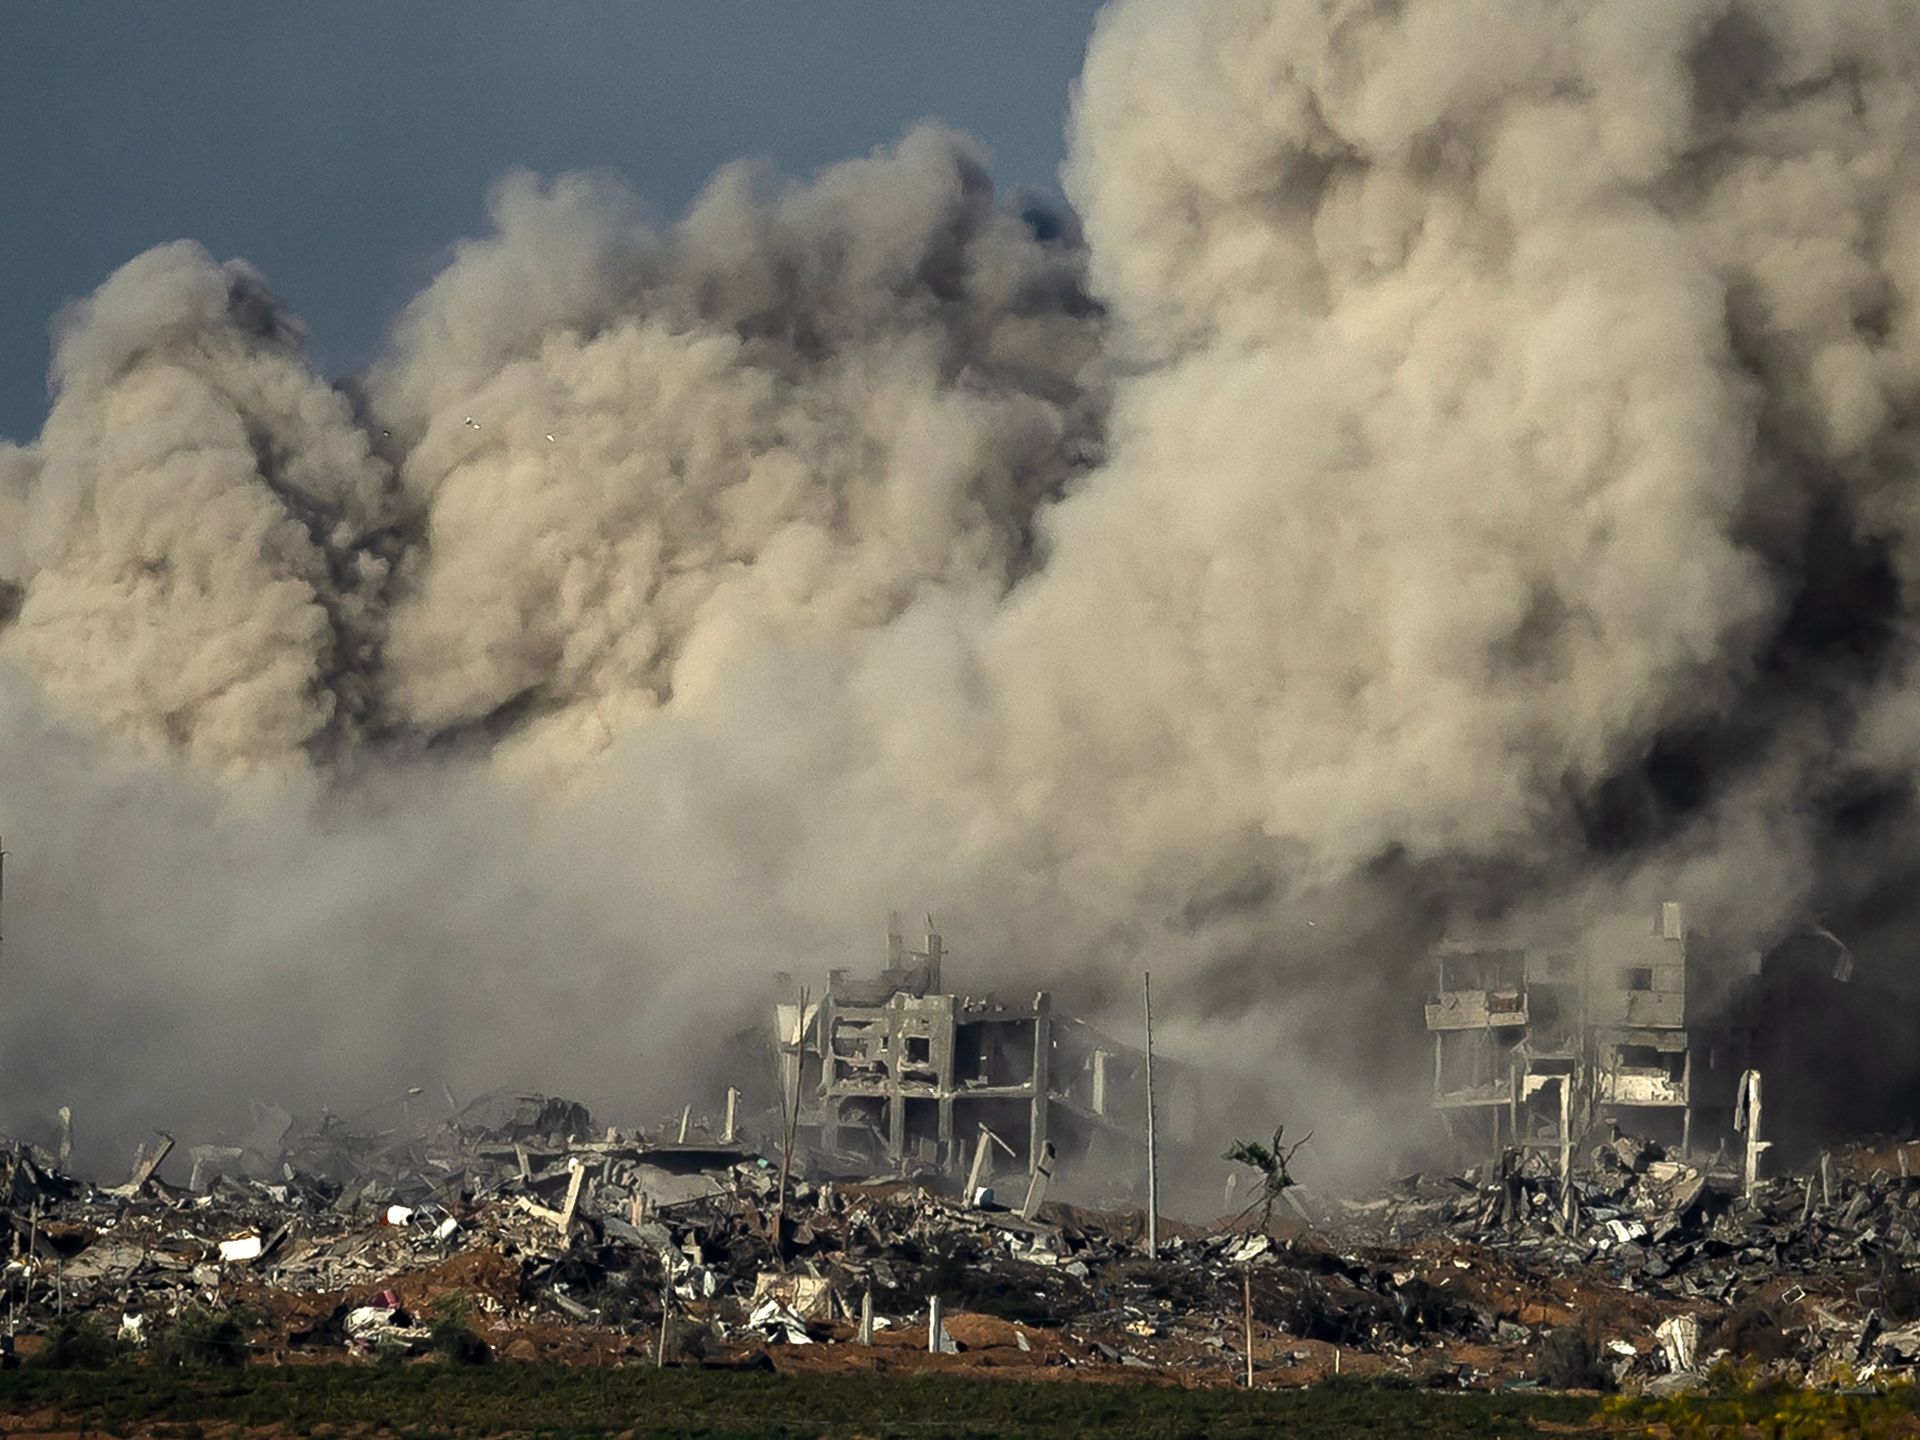 مقترح أميركي لإقامة مناطق آمنة بغزة ونشر قوات سلام ورفض أممي لإجراءات أحادية | أخبار – البوكس نيوز